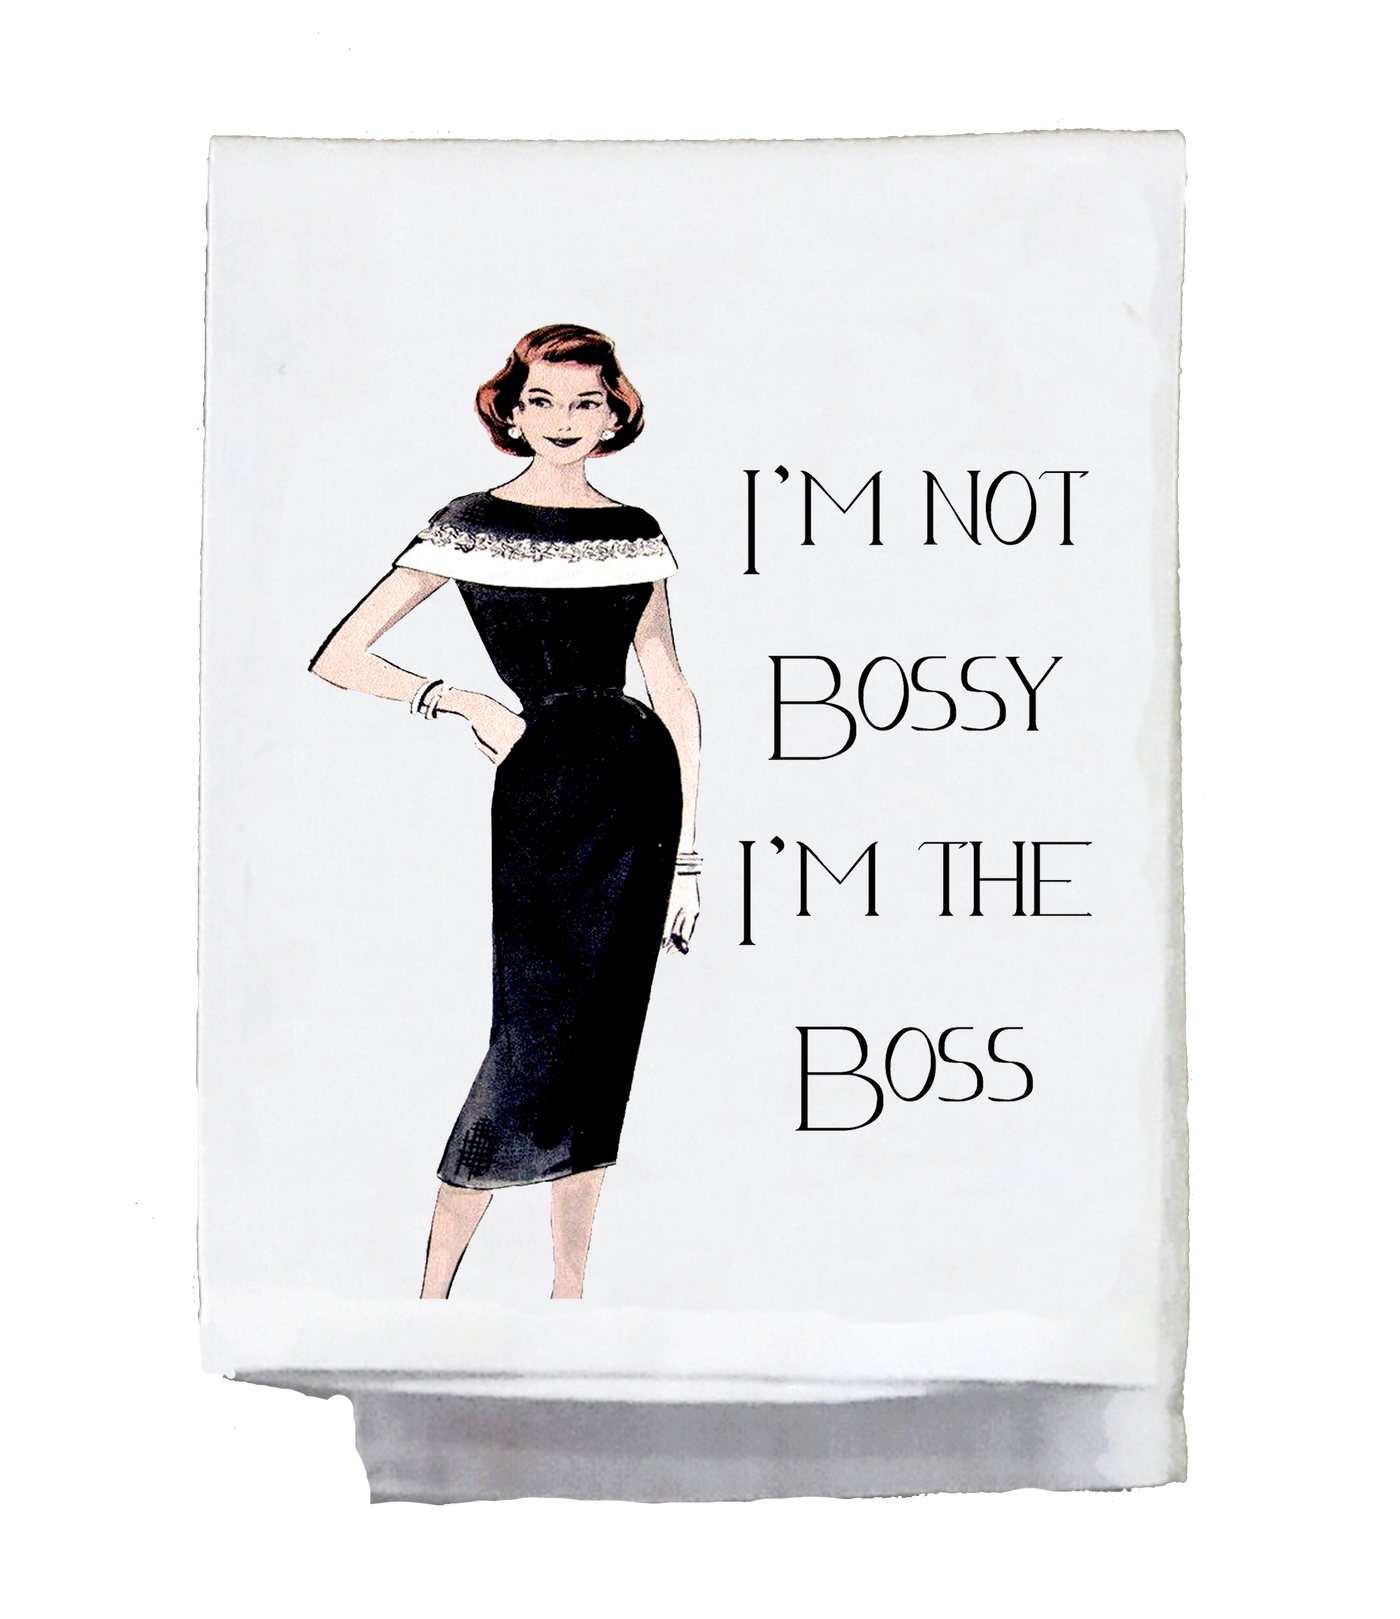 Sassy Girl, I'm Not Bossy I'm the Boss